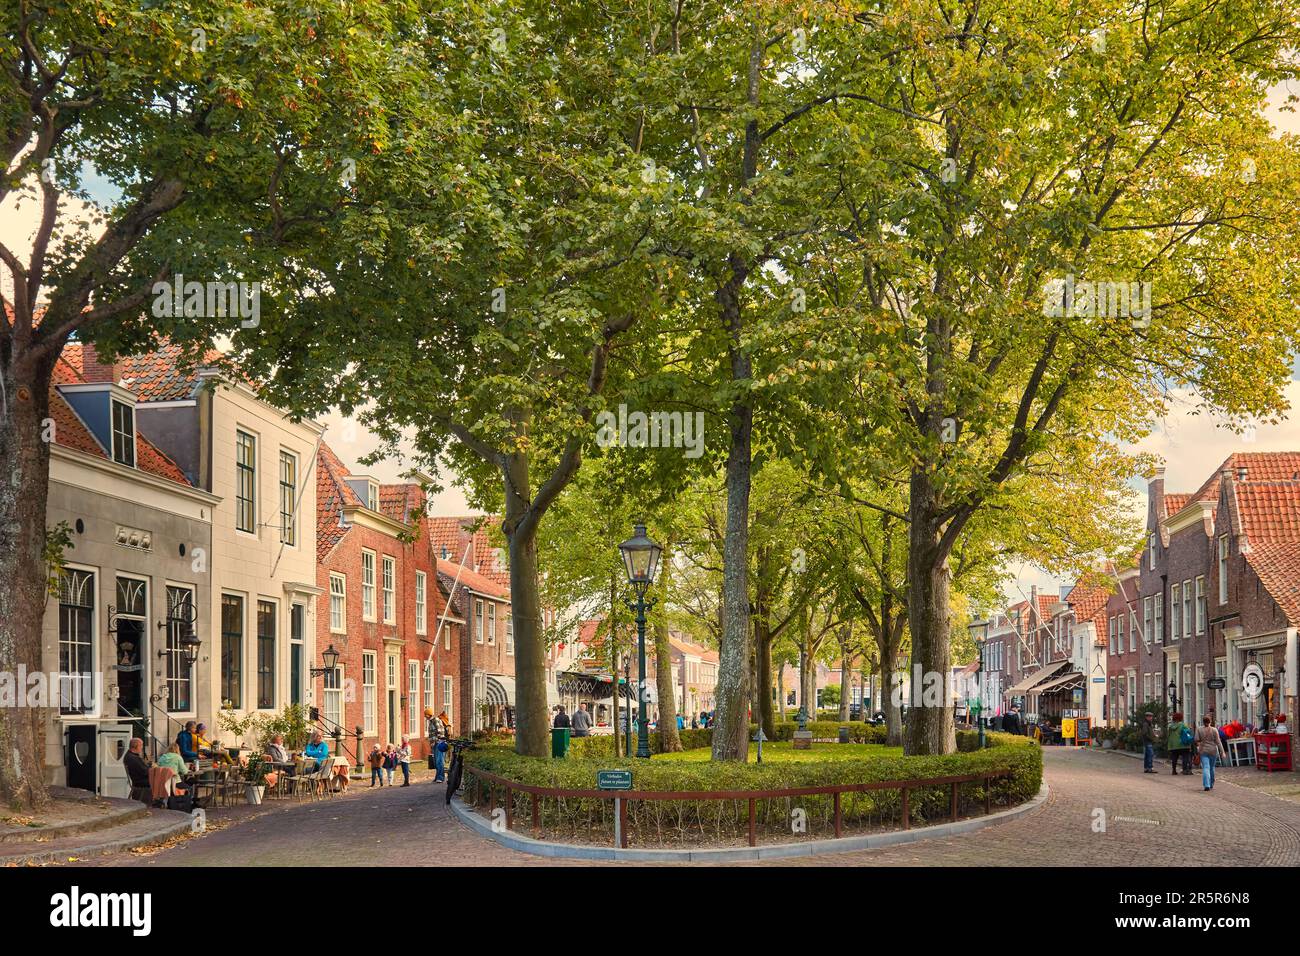 Veere, pays-Bas - 11 octobre 2022: La rue historique centrale avec des magasins, des bars et des restaurants dans l'ancien centre-ville hollandais de Veere en Z Banque D'Images